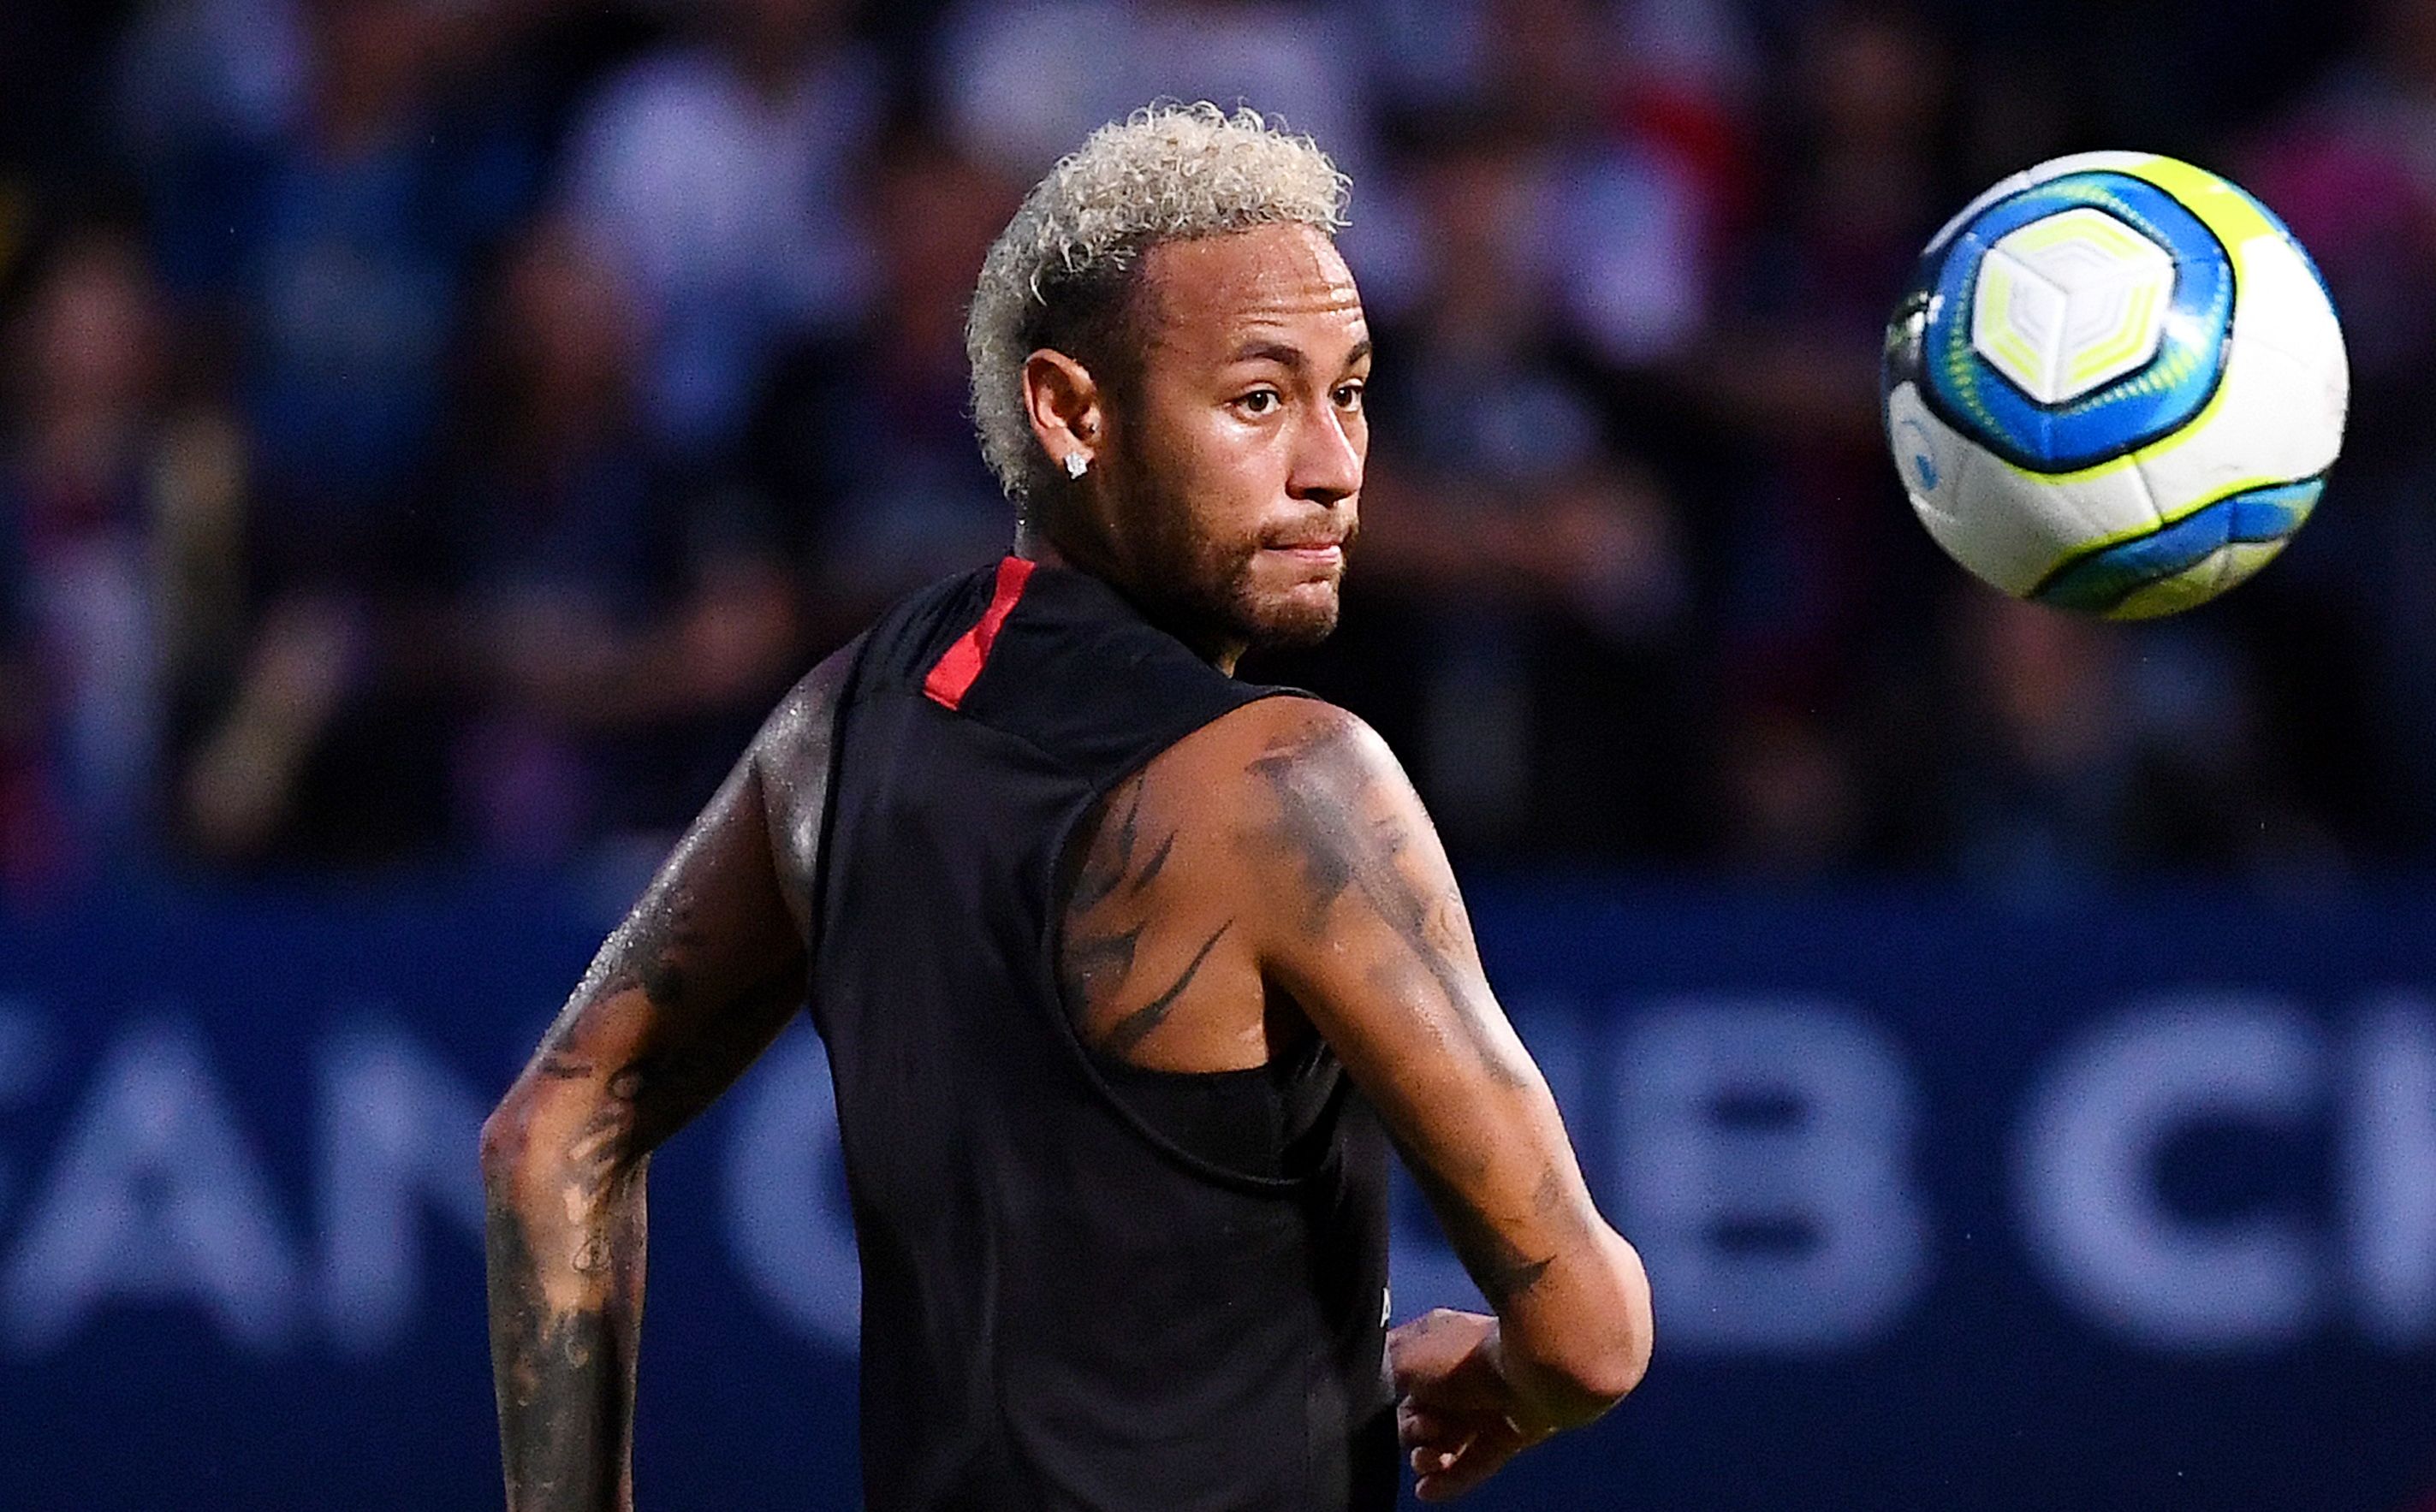 Según expertos deportivos, El París Saint-Germain (PSG) podría negociar con el Real Madrid, el fichaje de Neymar. (Foto Prensa Libre: AFP)